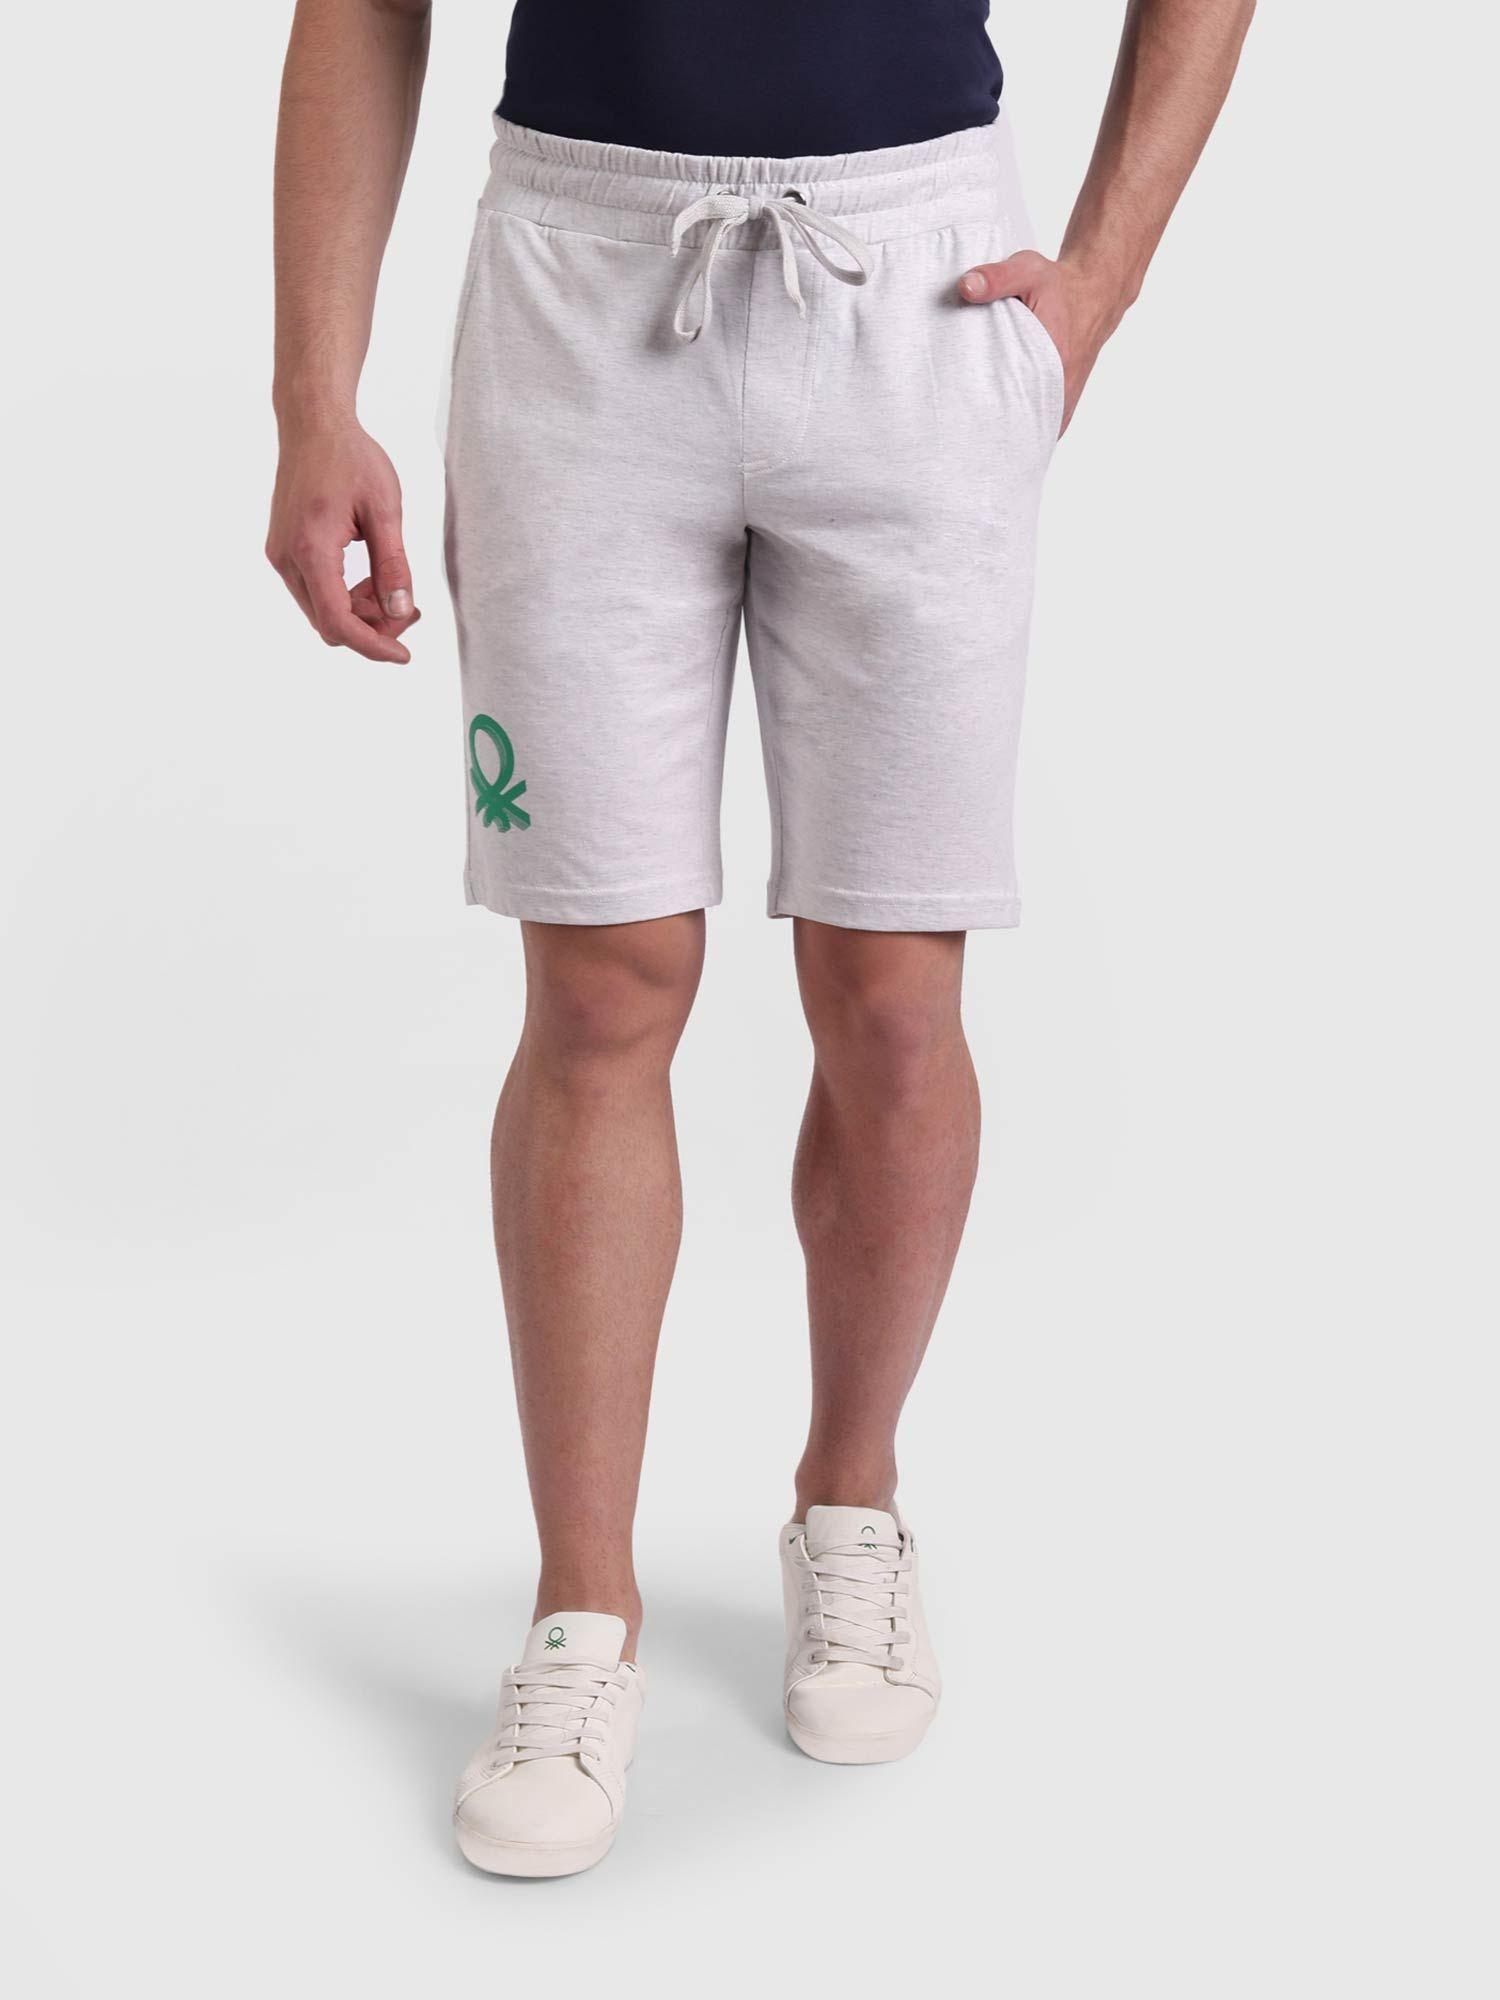 printed shorts